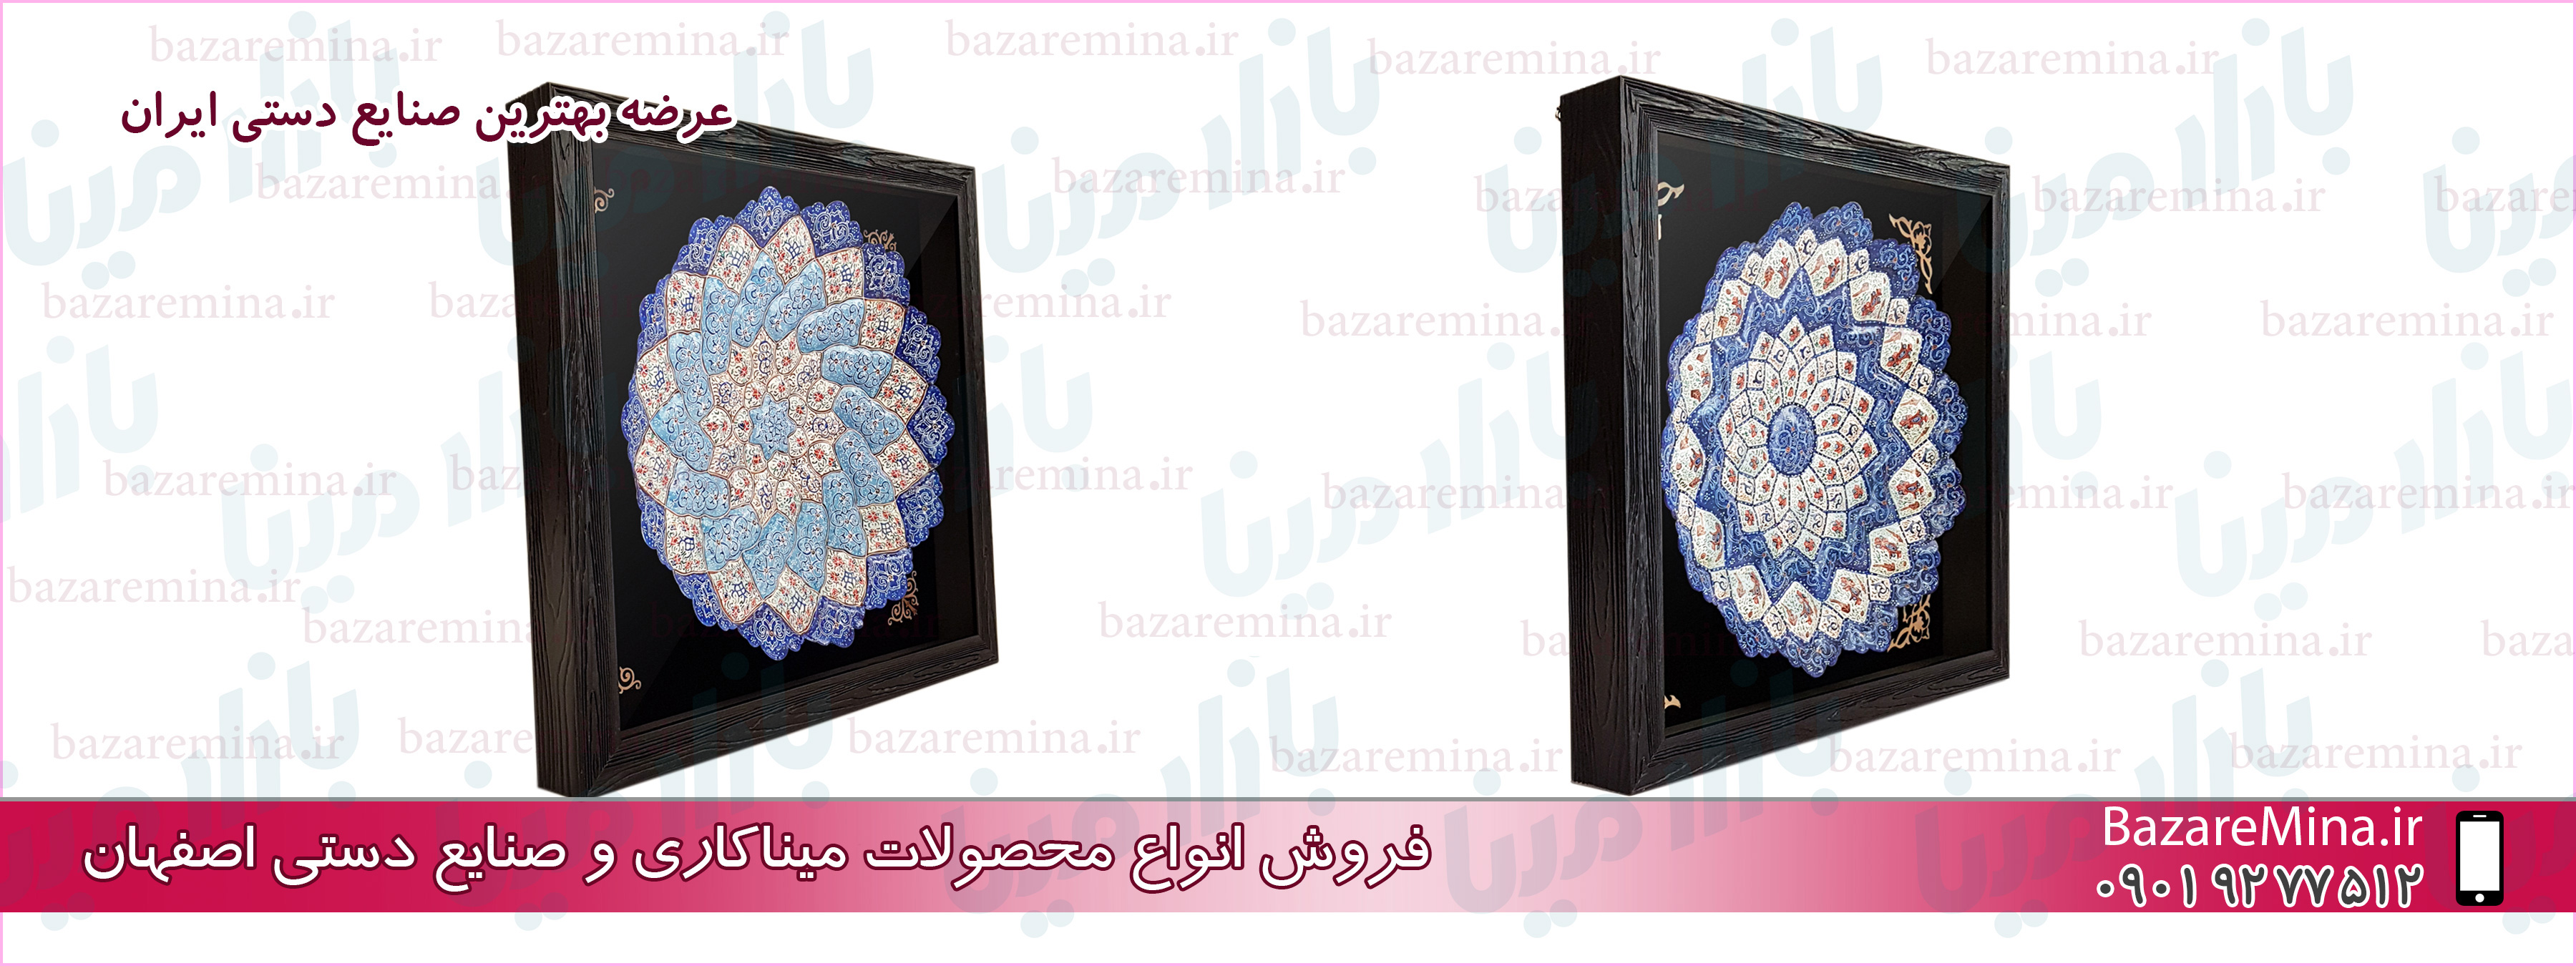 ظروف مسی میناکاری شده اصفهان